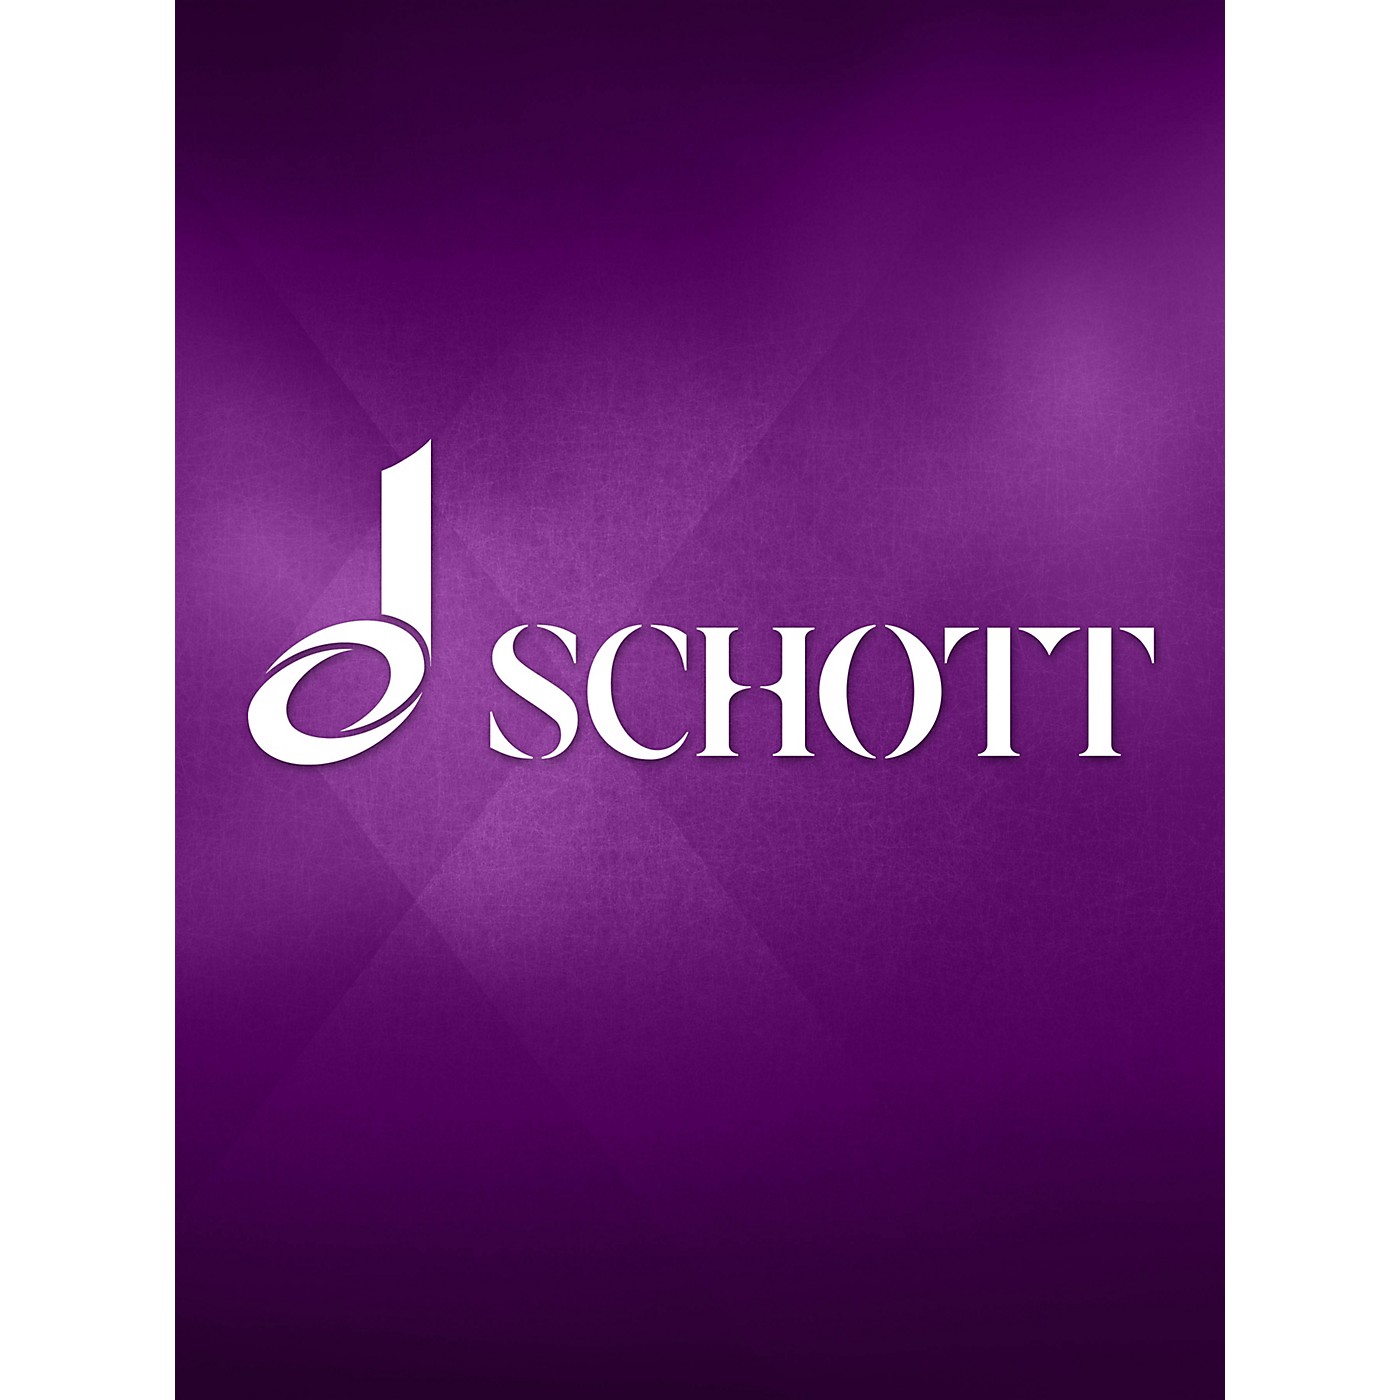 Schott Neue Anleitung Für Das Klavierspiel (German Language) Schott Series thumbnail